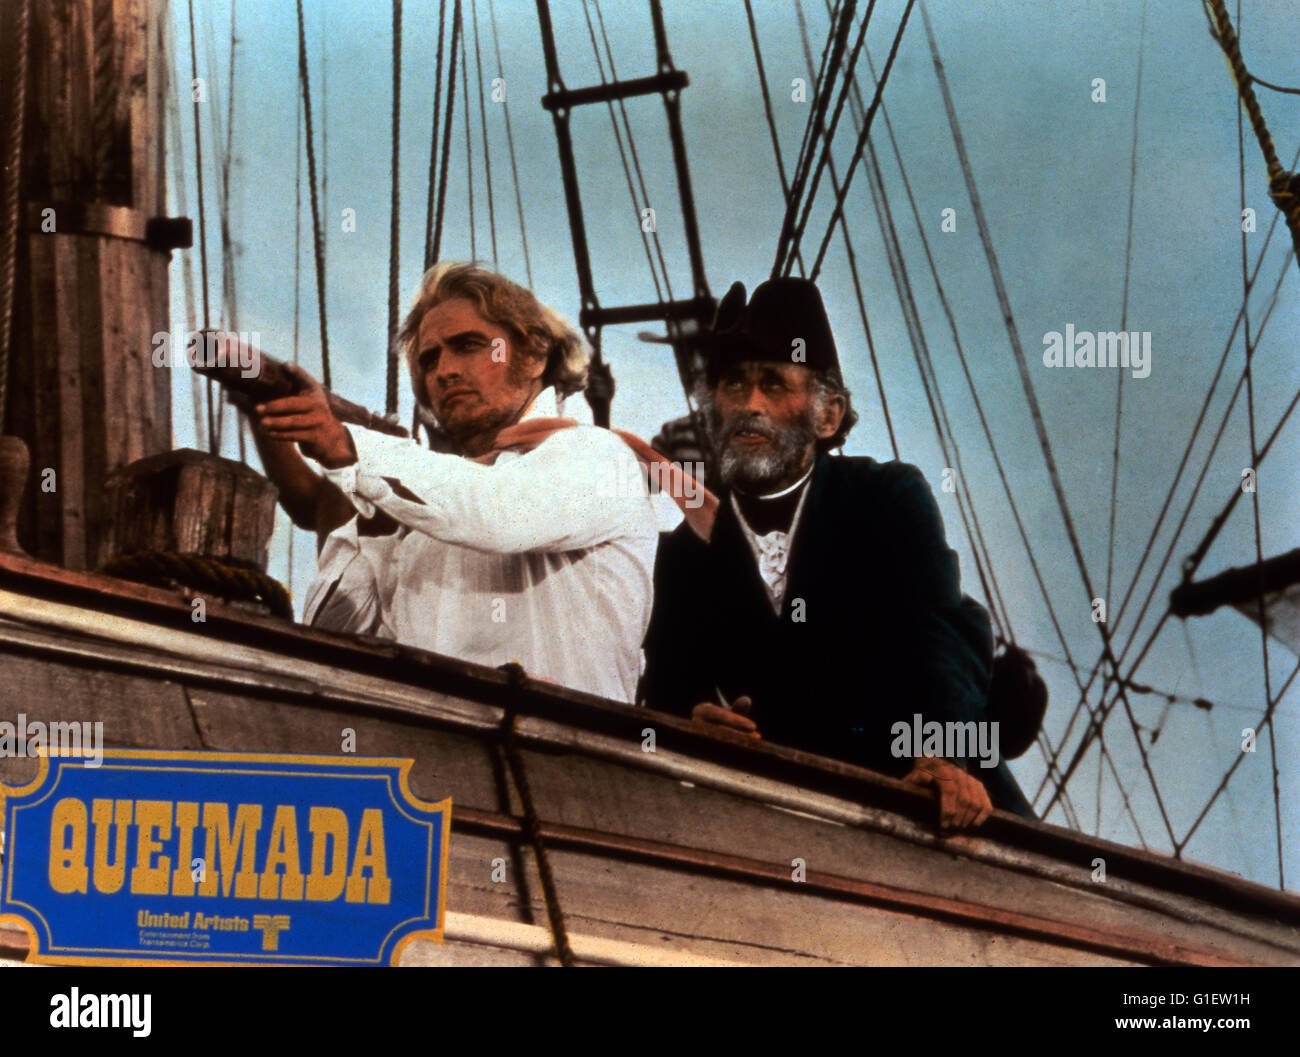 Queimada, aka: Insel des Schreckens, Italien/Frankreich 1969, Regie: Gillo Pontecorvo, Darsteller: Marlon Brando Stock Photo